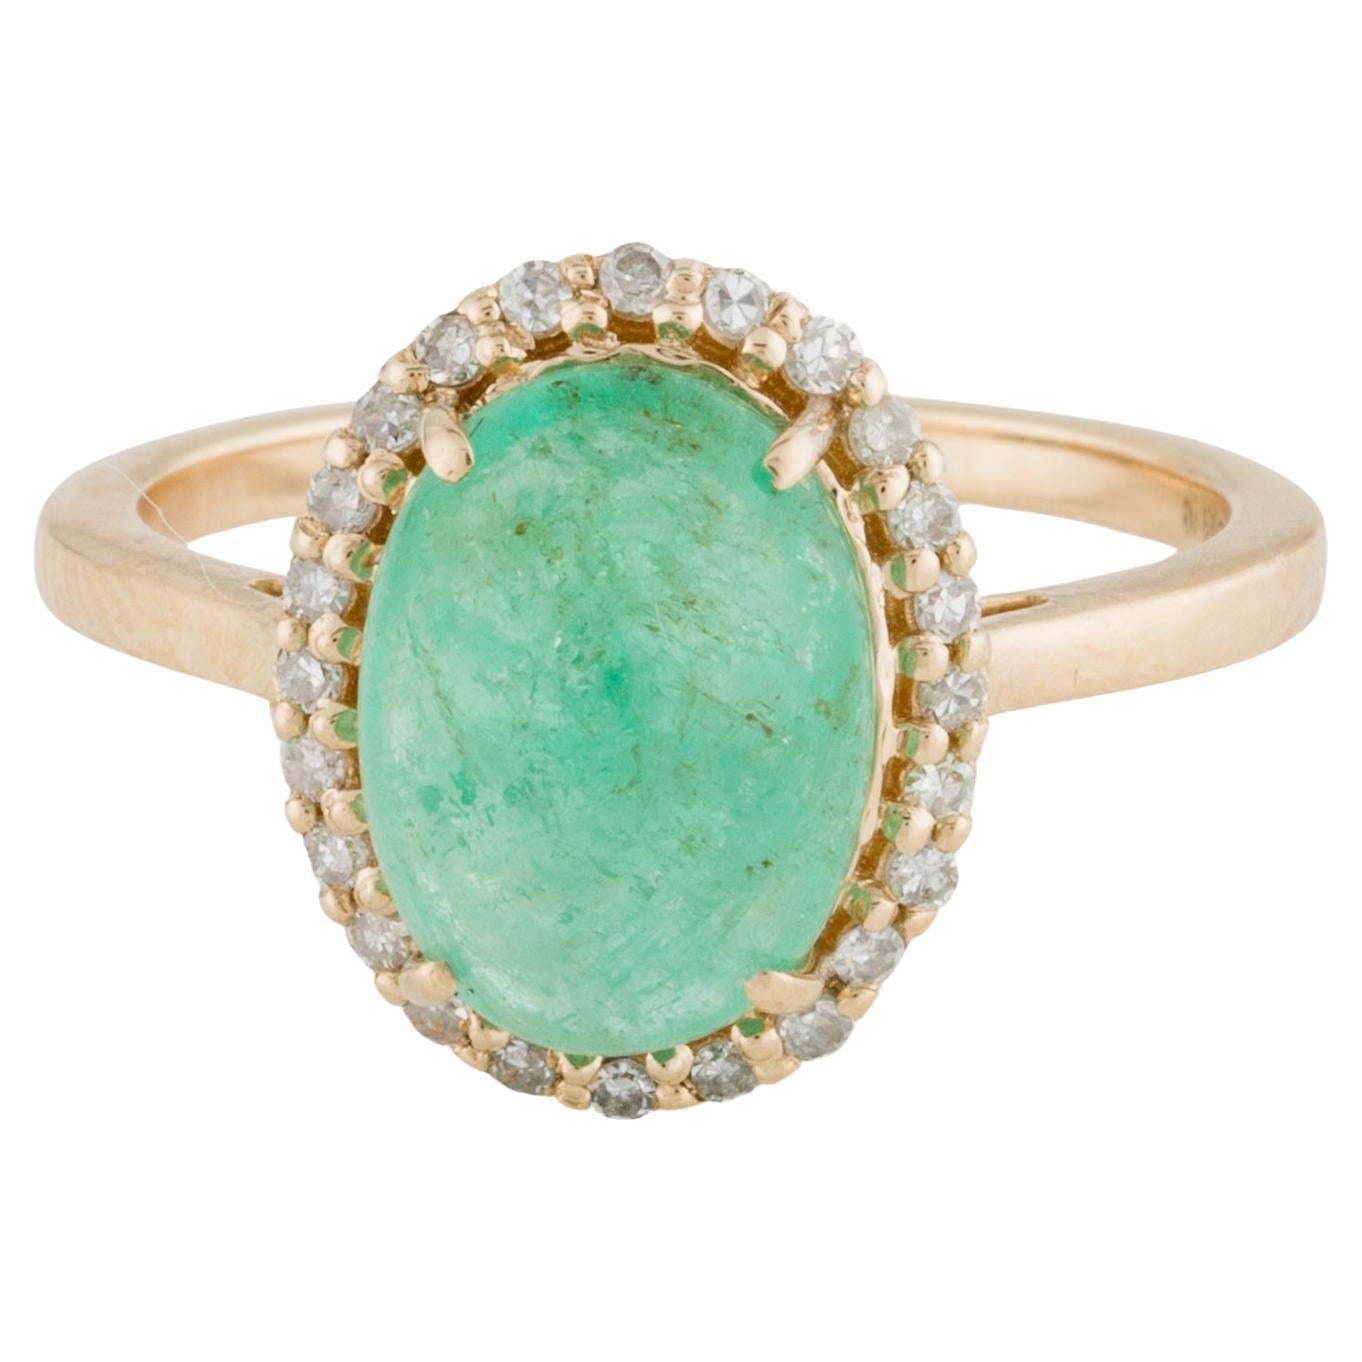 Luxuriöser 14K Smaragd & Diamant Cocktail Ring - 3,59ct Edelstein - Größe 6,75